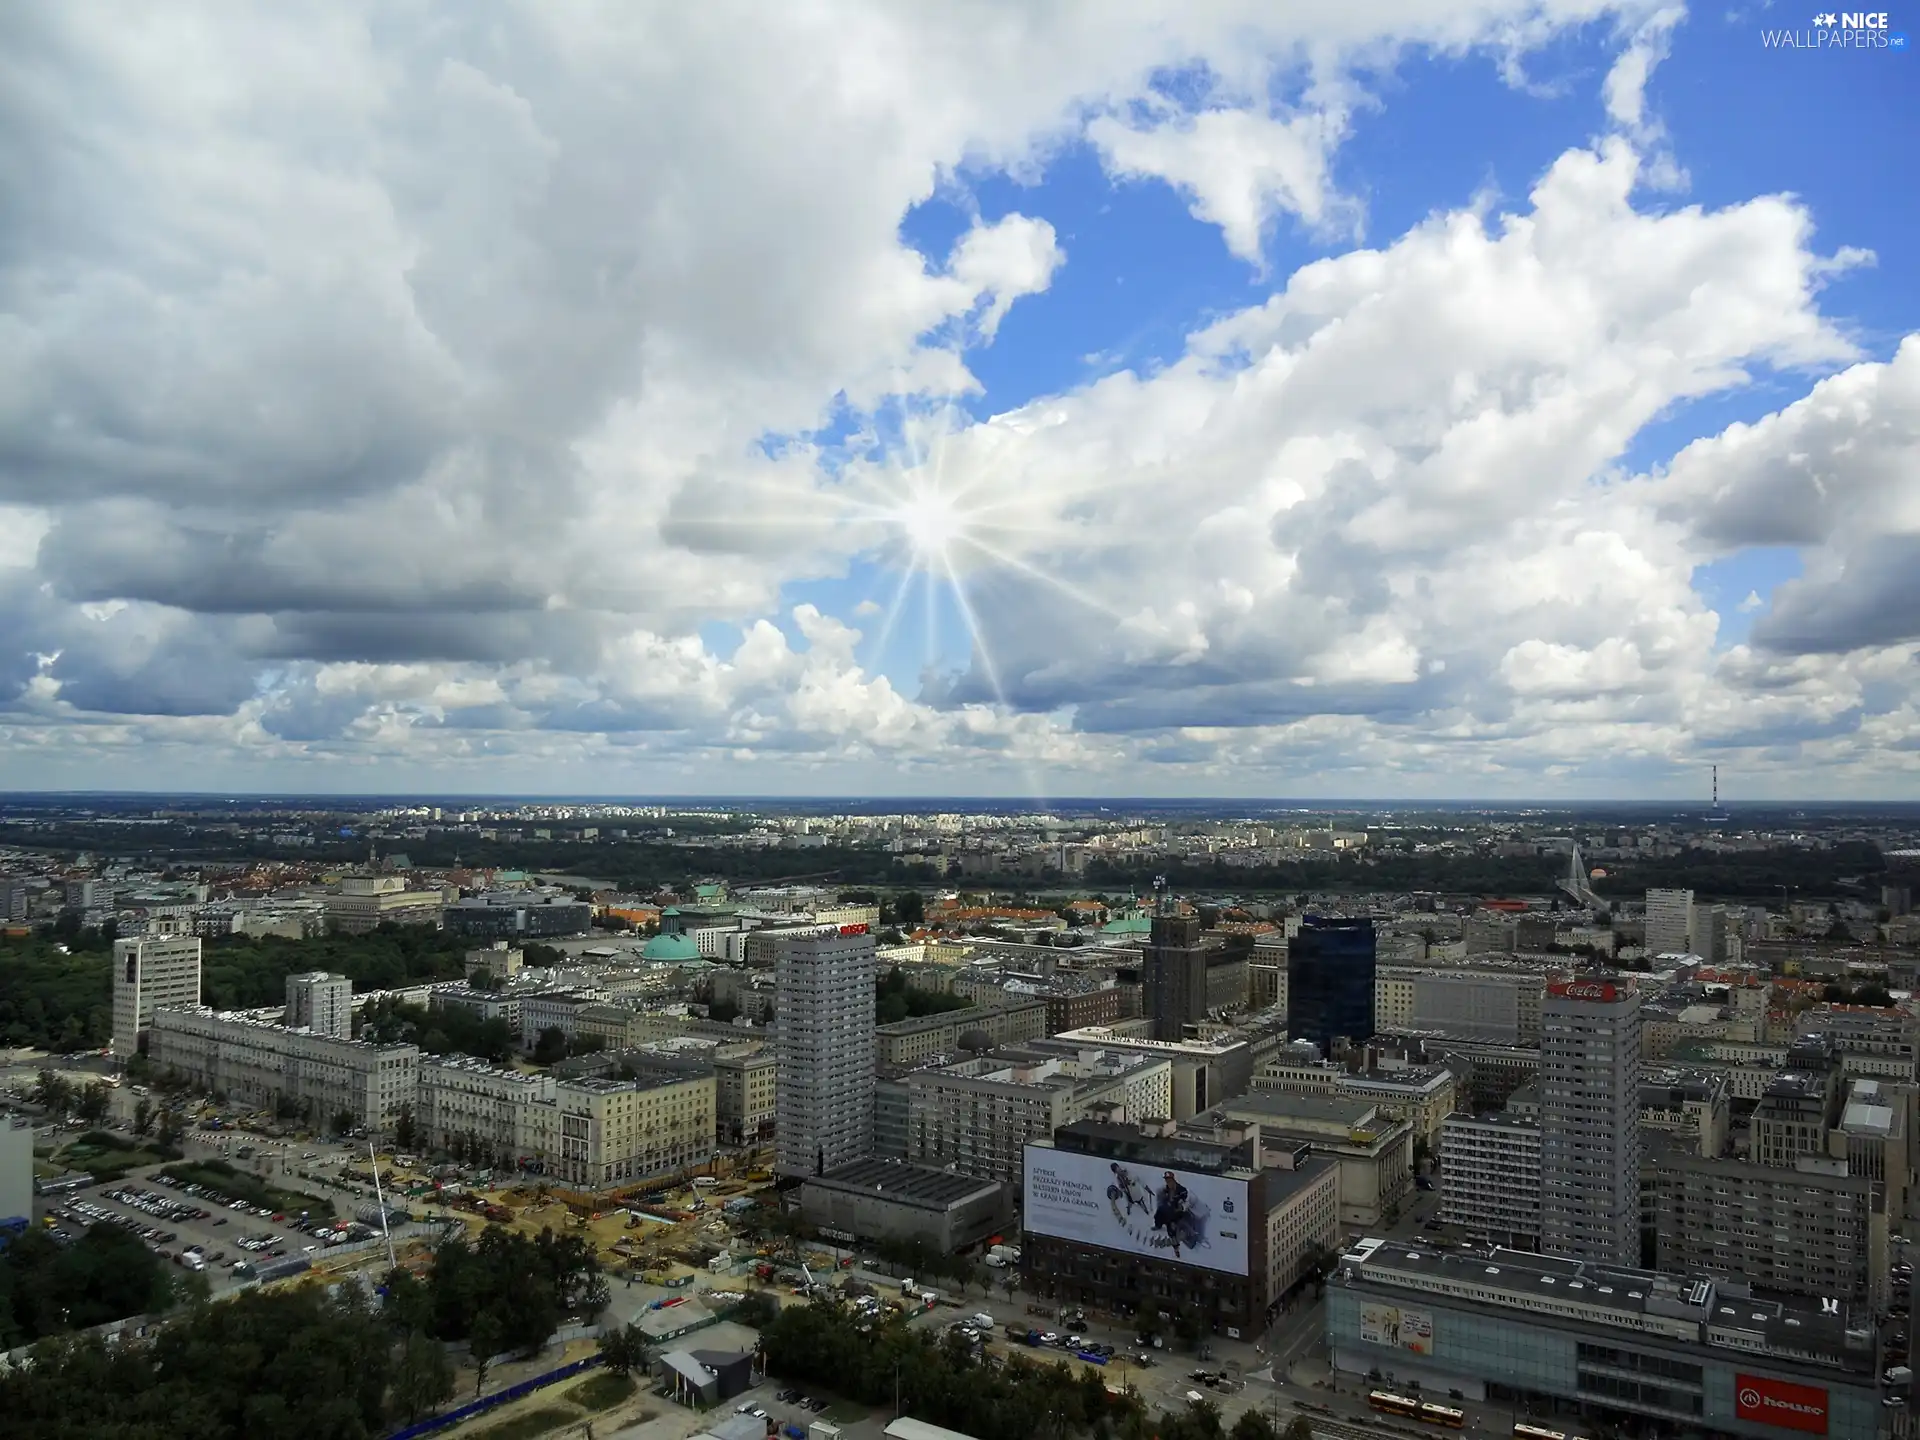 Warsaw, panorama